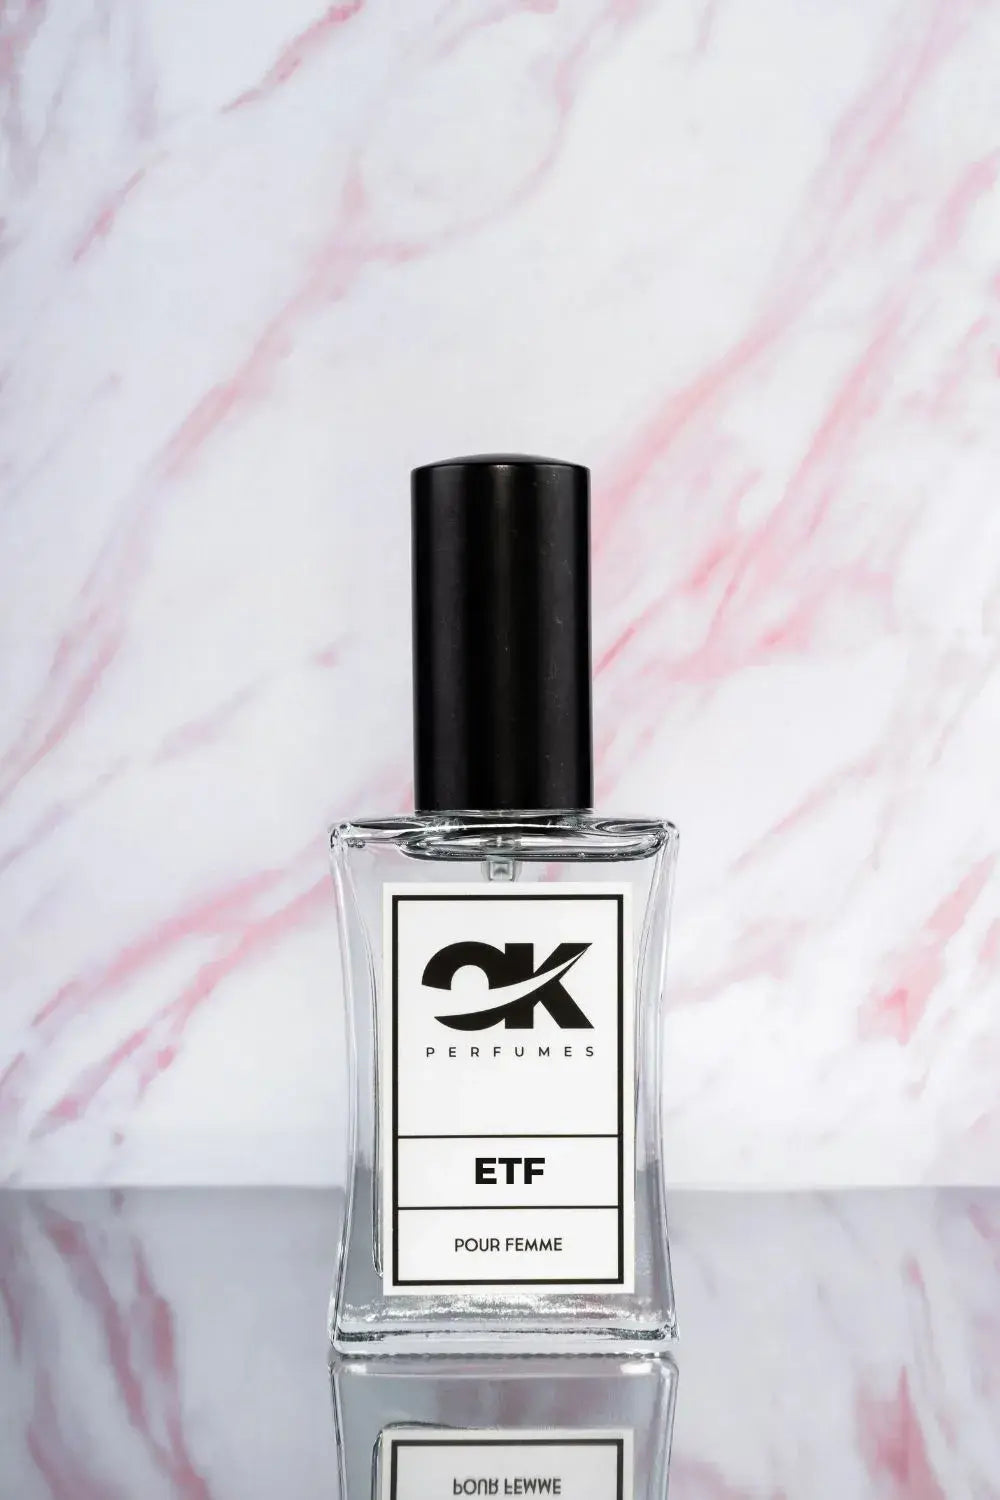 ETF - Uma reminiscência da Eternidade feminina da Calvin Klein